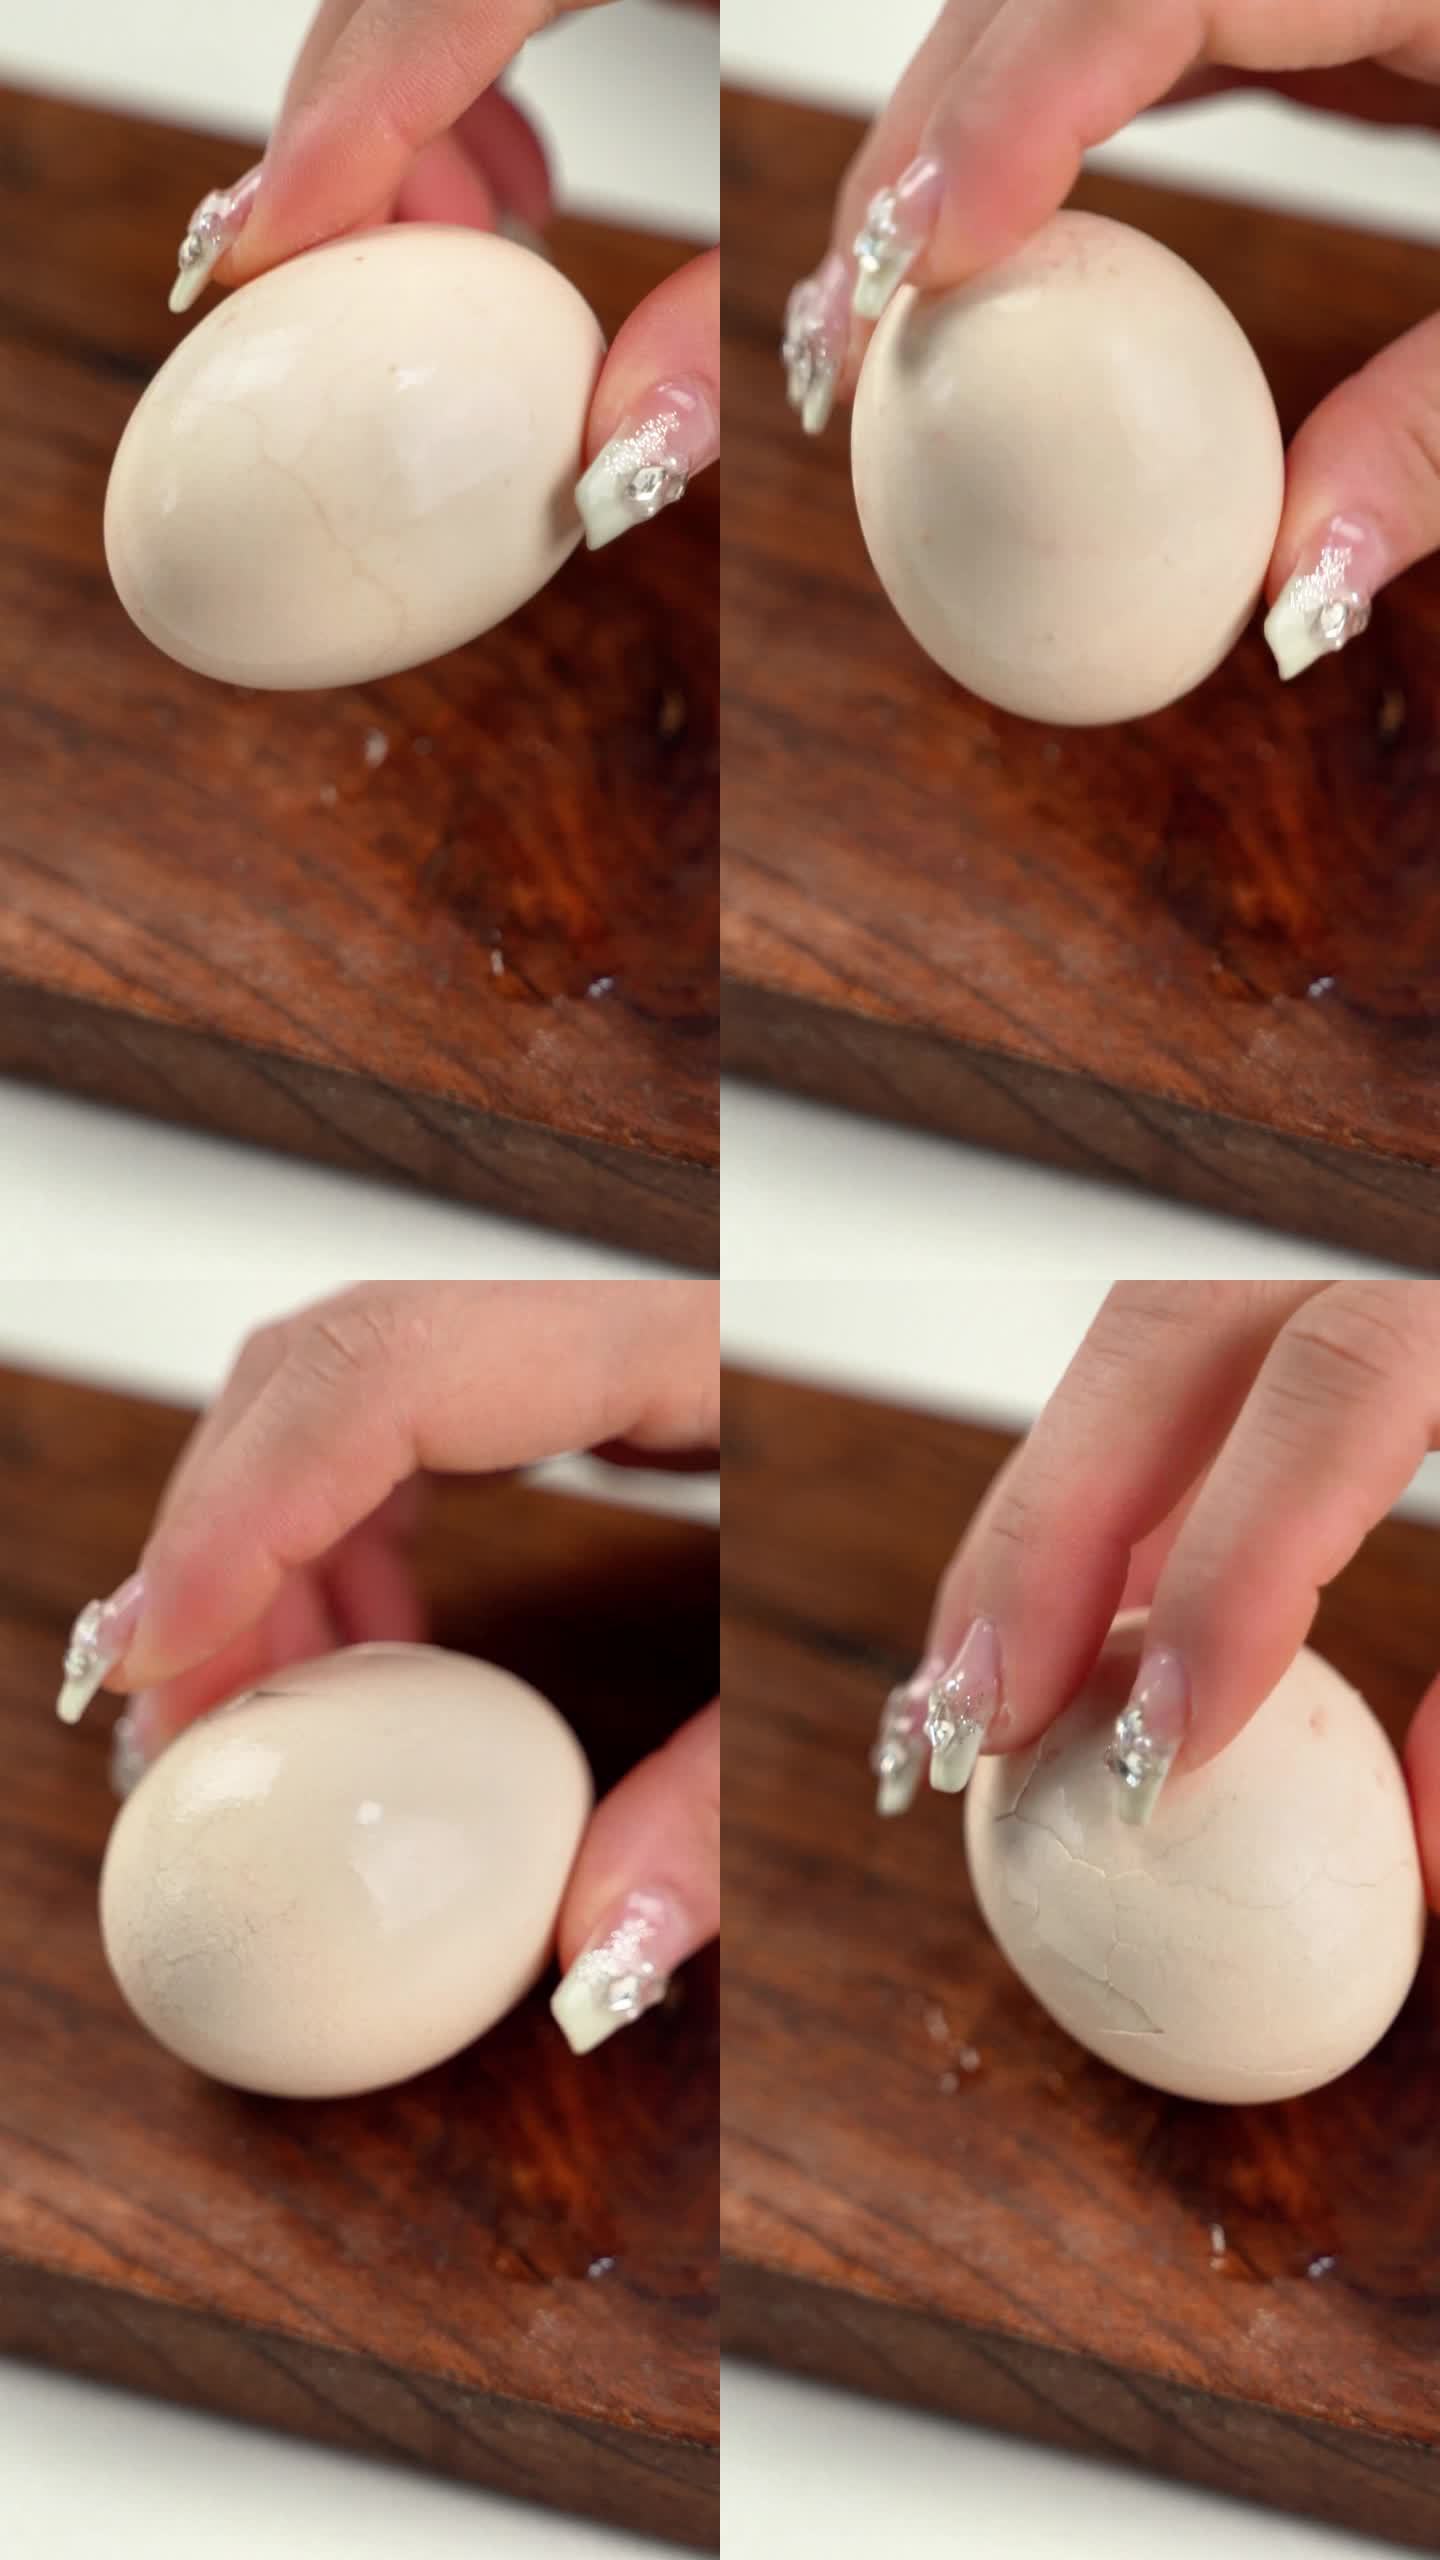 用手将煮熟的鸡蛋磕开